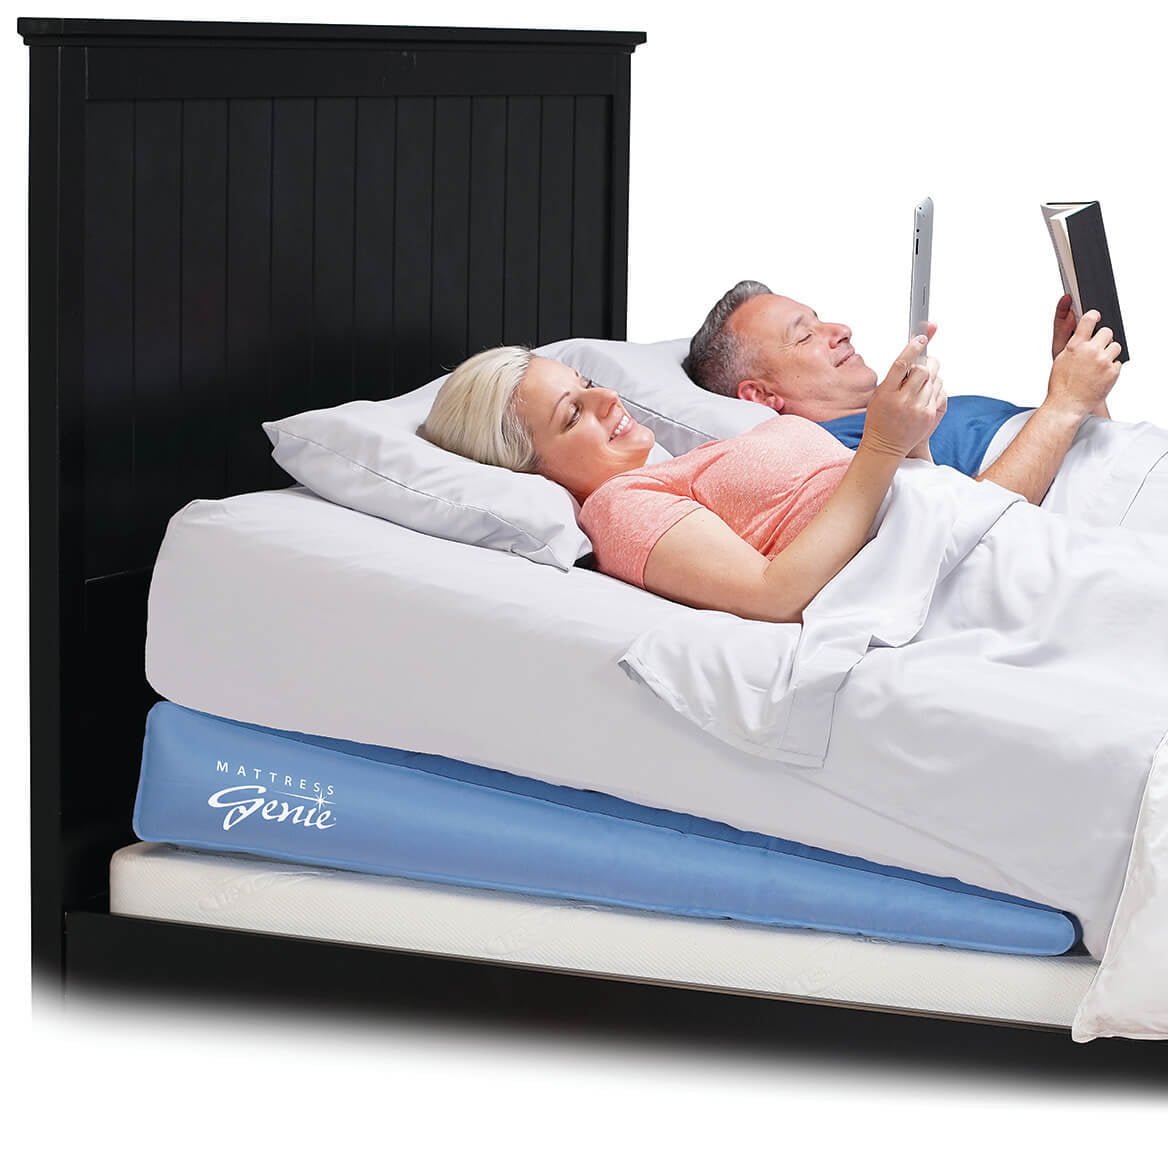 Mattress Genie Incline Sleep System, Mattress Genie Adjustable Bed Wedge Queen Size